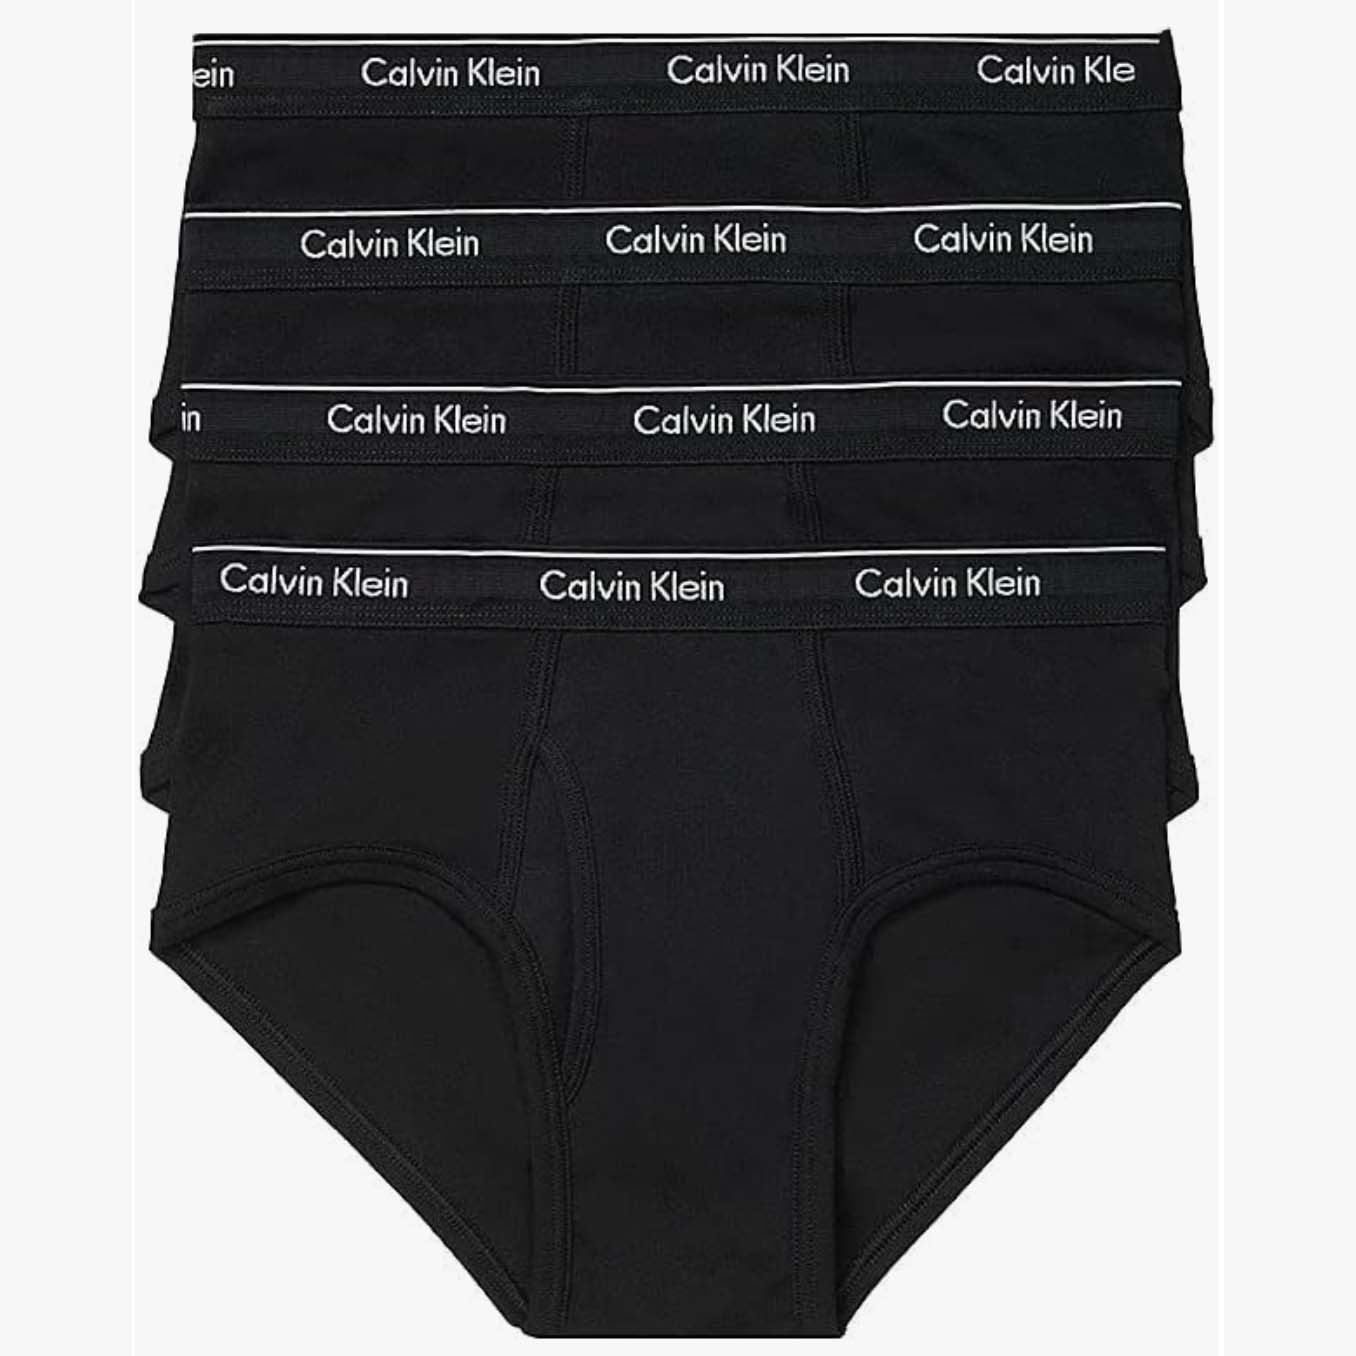 Three black Calvin Klein's briefs